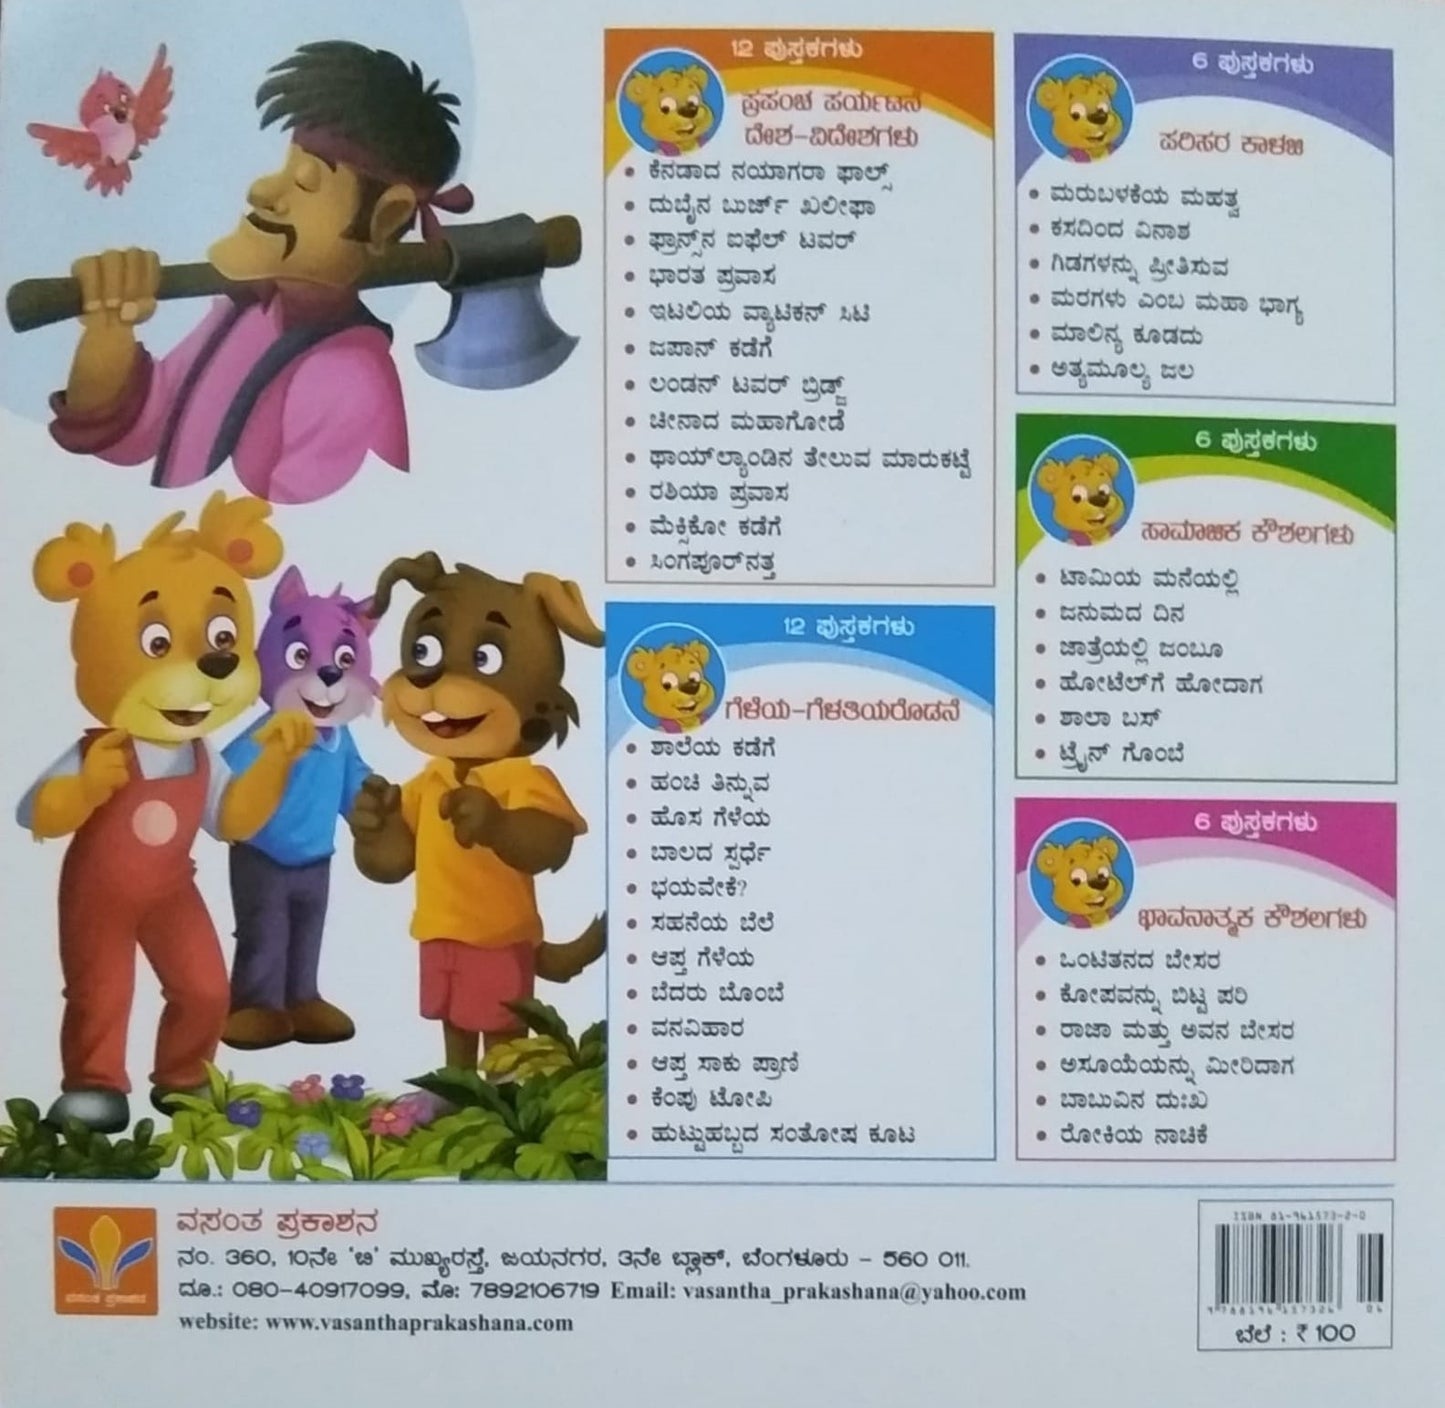 Maragalu Emba Maha Bhagya is a Book of Children's Stories, Edited by S. Pattabhirama, Published by Vasantha Prakashana